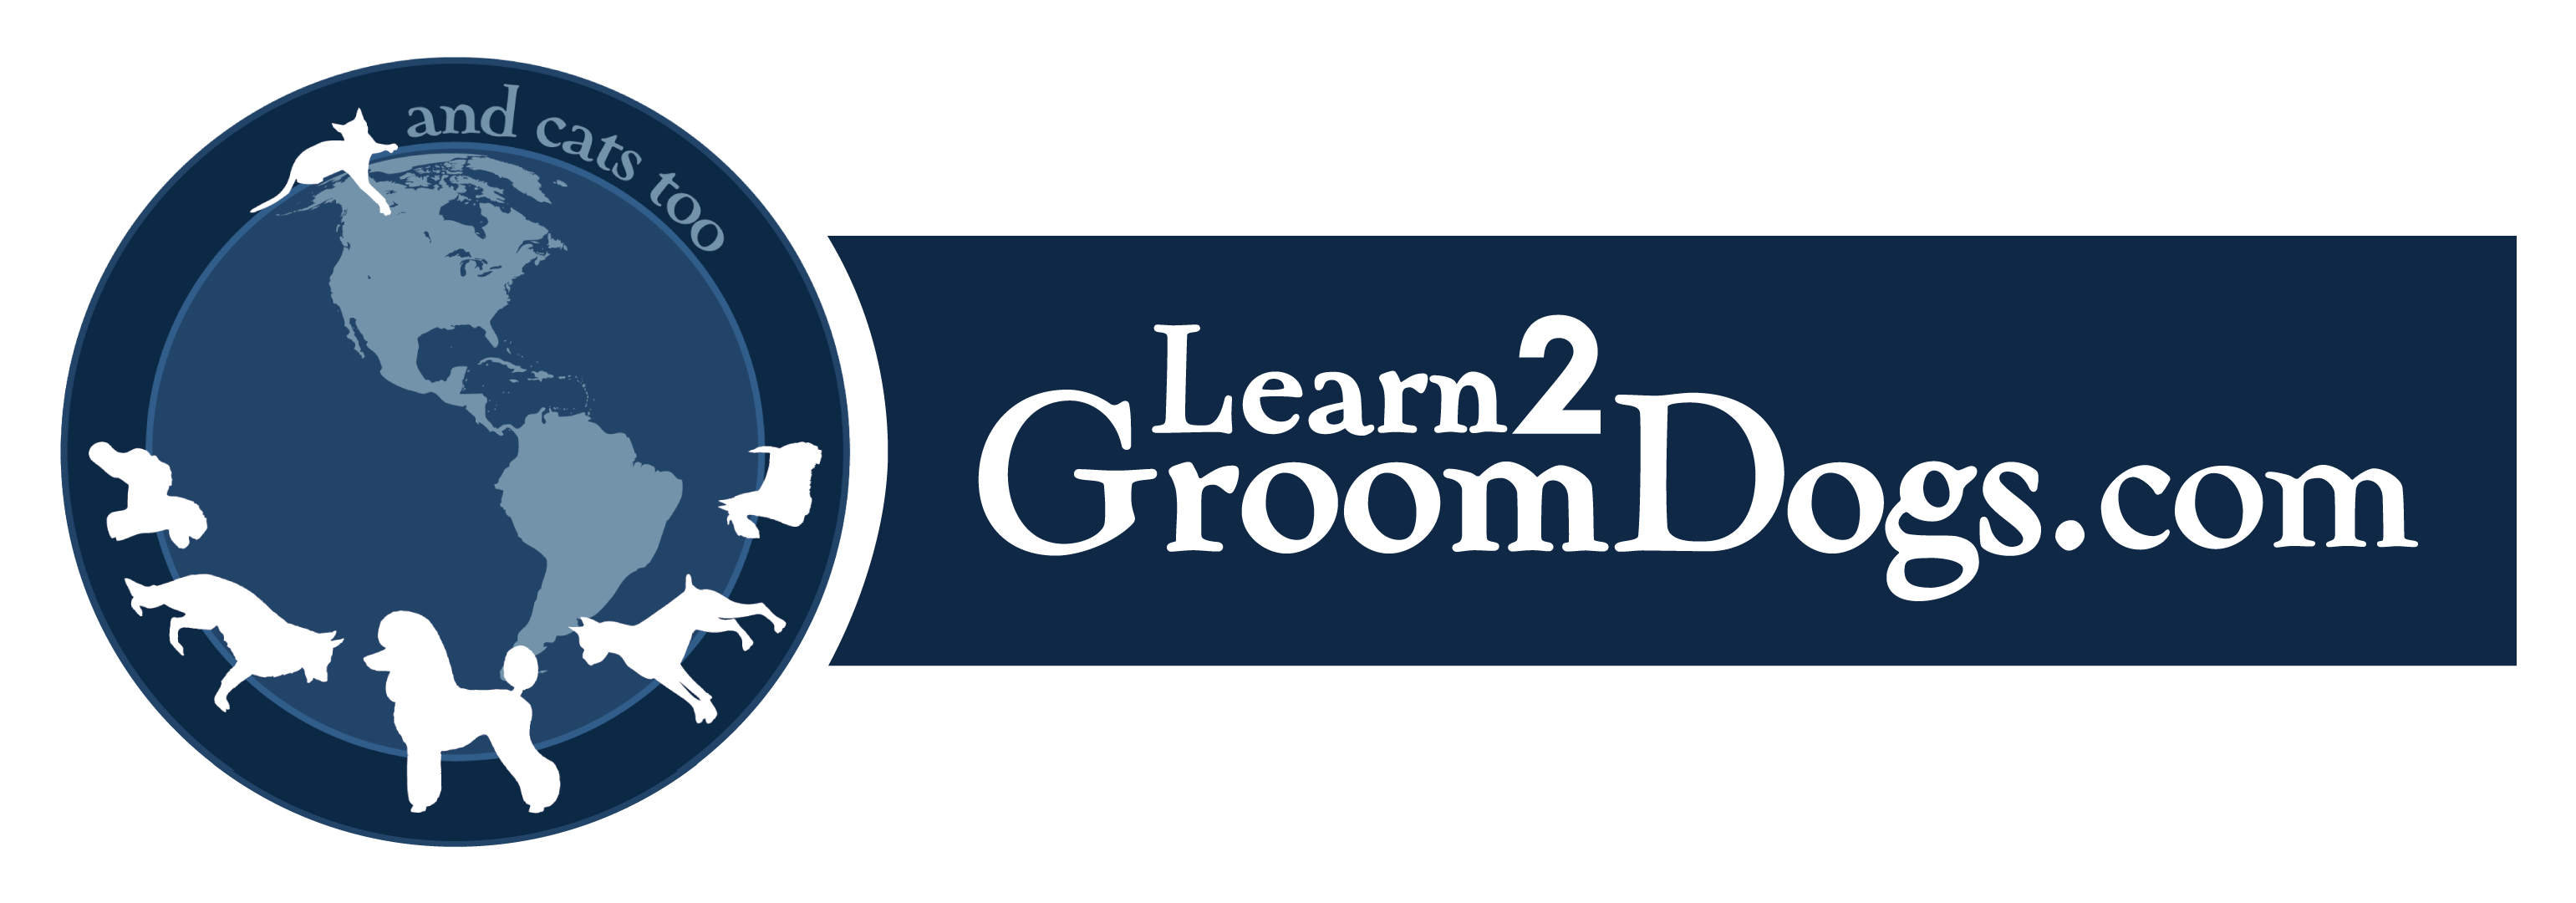 Learn2Groomlogo2